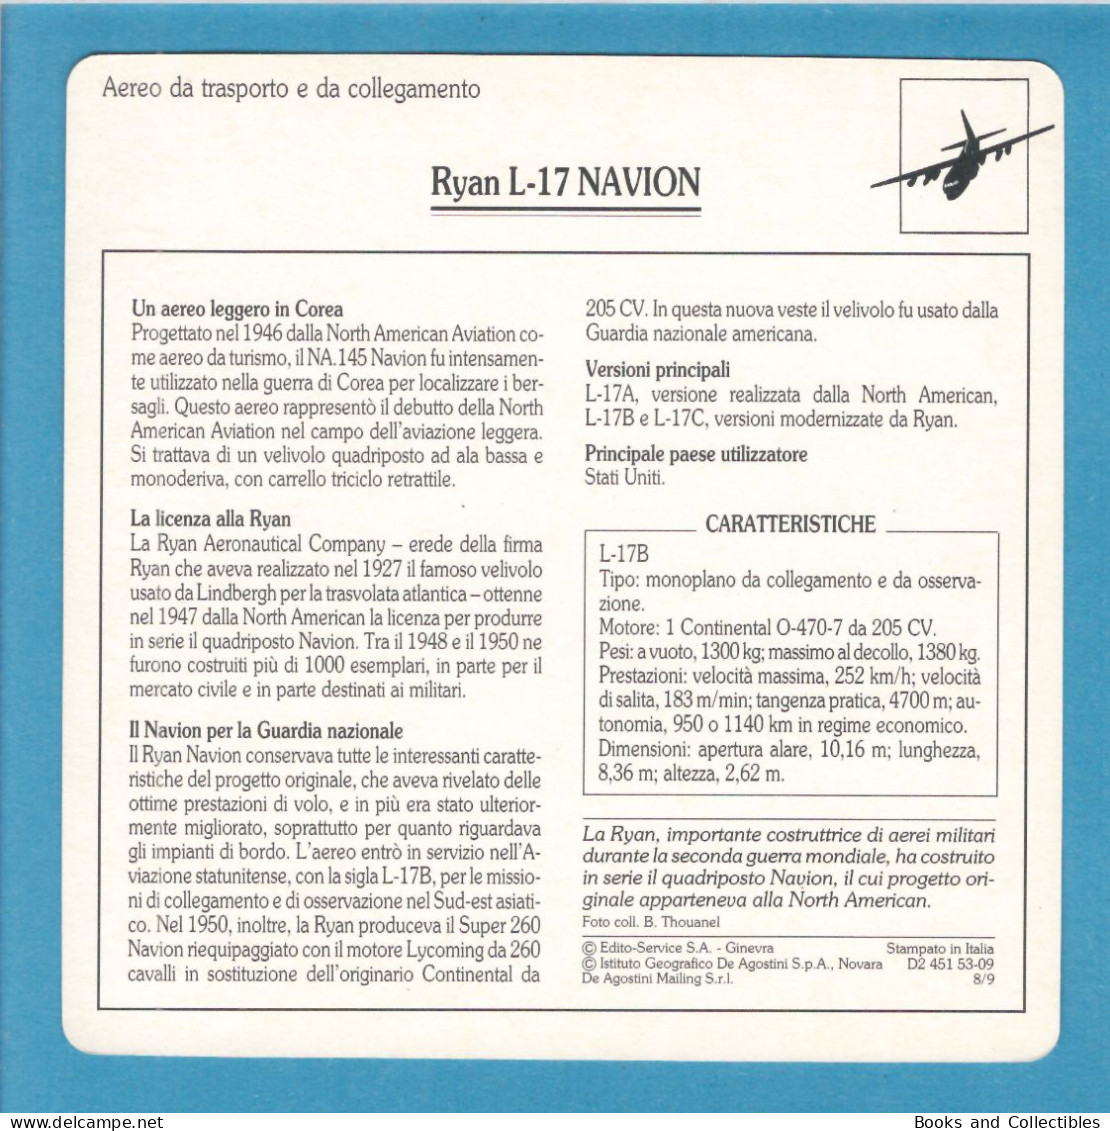 DeAgostini Educational Sheet "Warplanes" / Ryan L-17 NAVION (U.S.A.) - Aviation